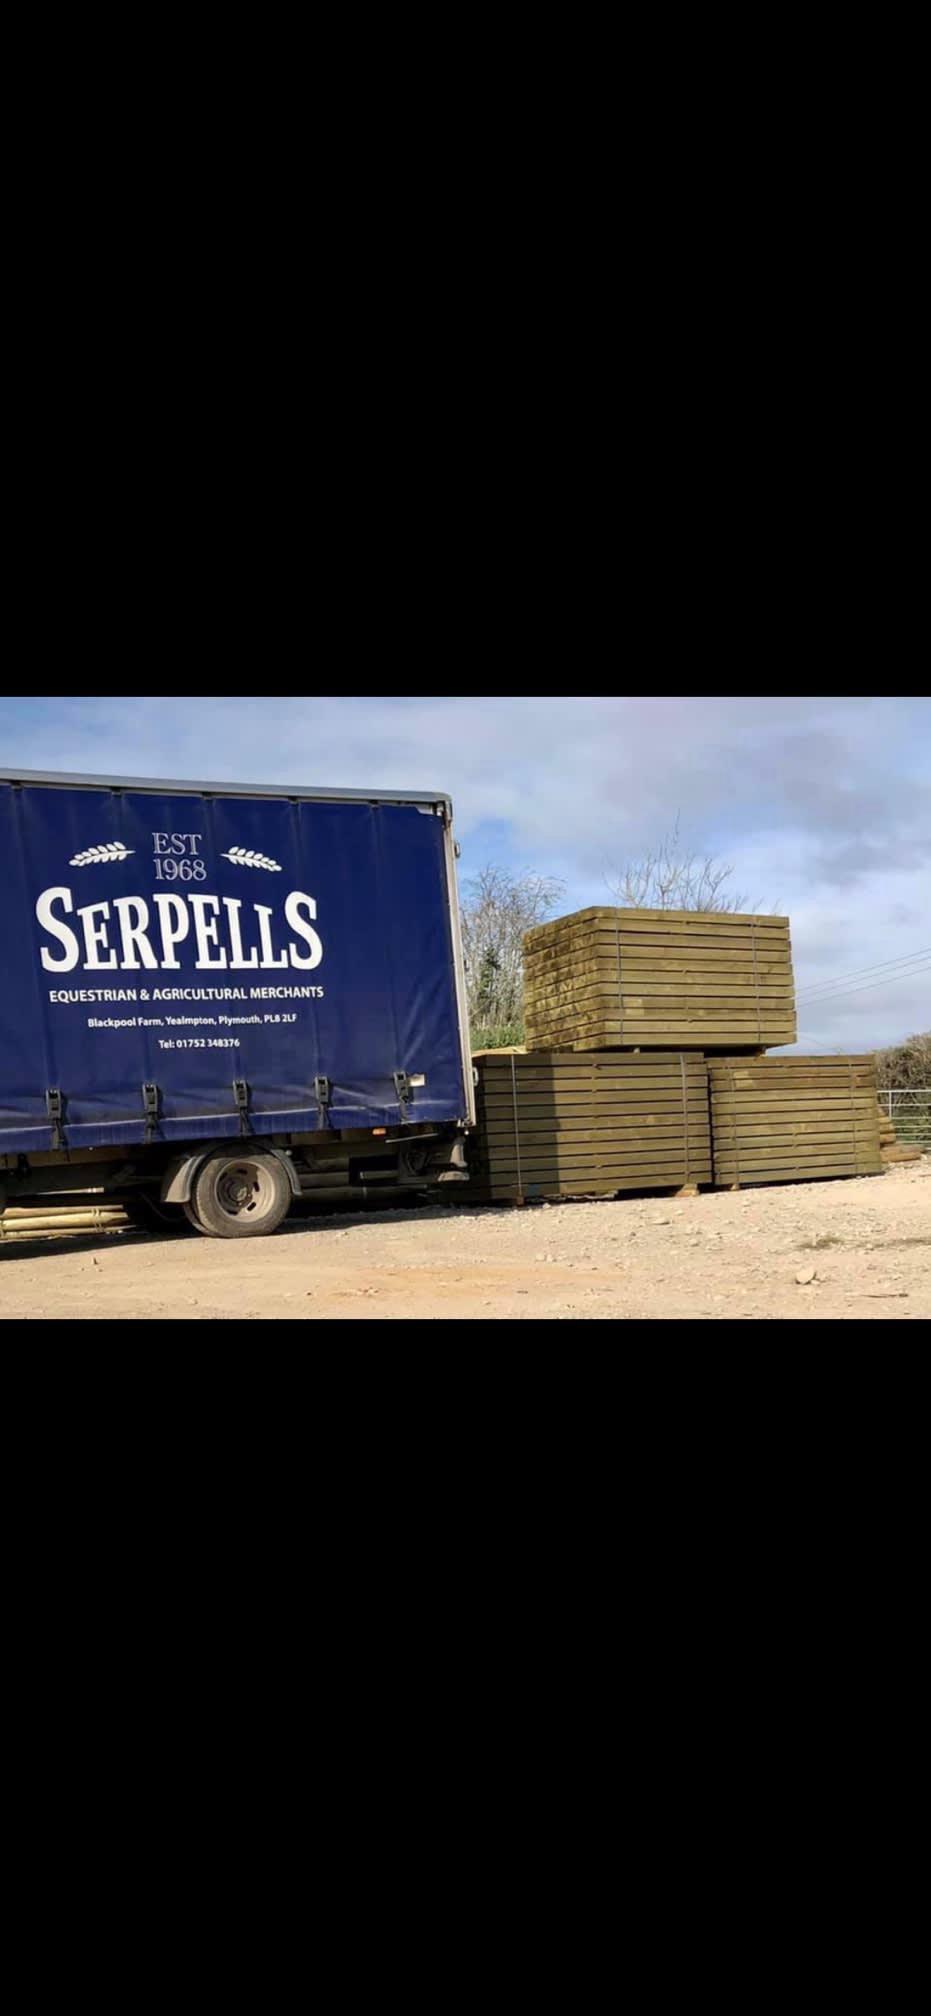 Images Serpells Ltd